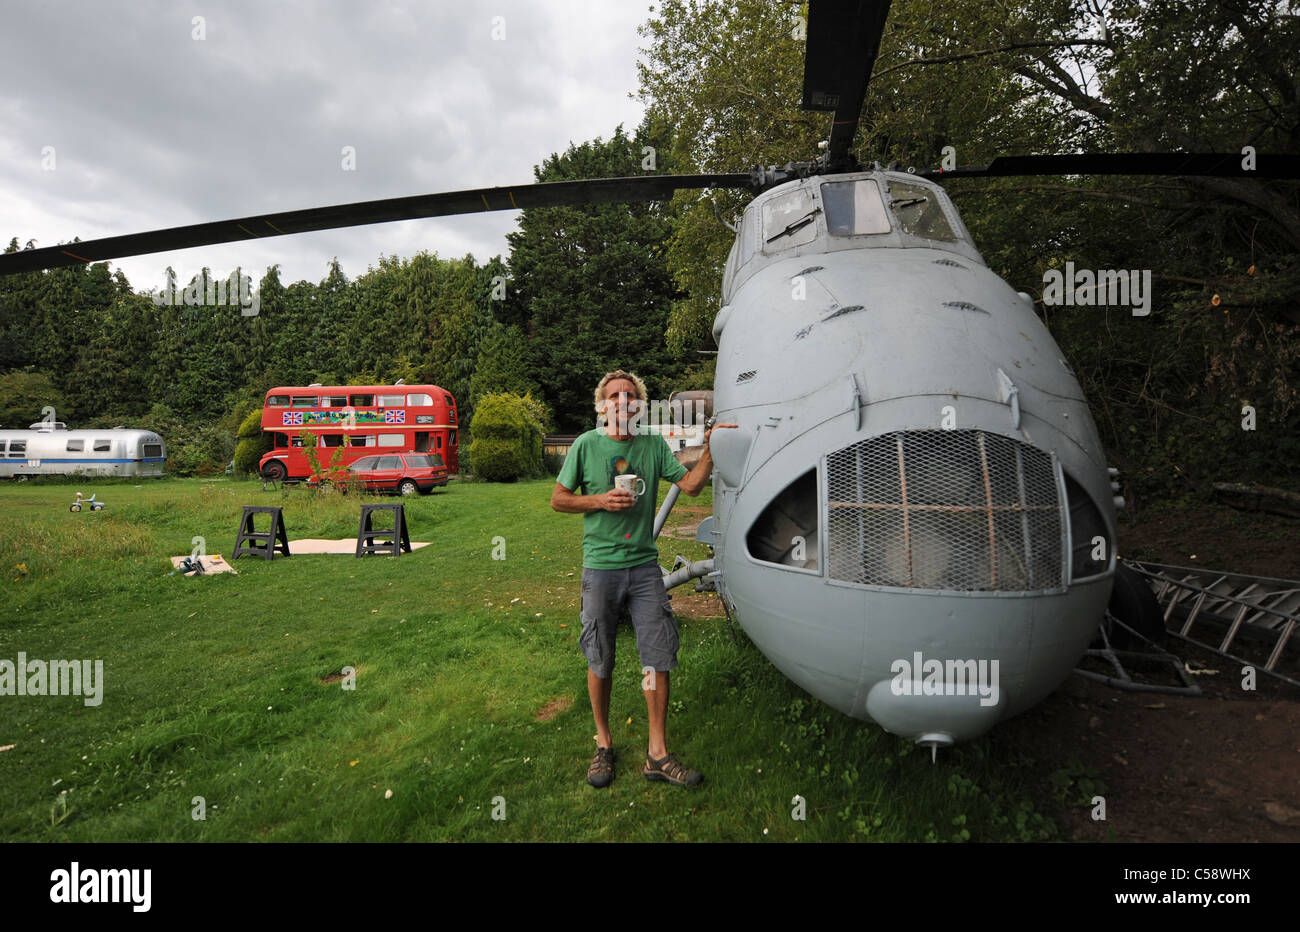 Tim Johnson Westland compraron un viejo helicóptero de búsqueda y rescate que se está convirtiendo en una casa de vacaciones para alquilar en su Blackberry madera camping Foto de stock